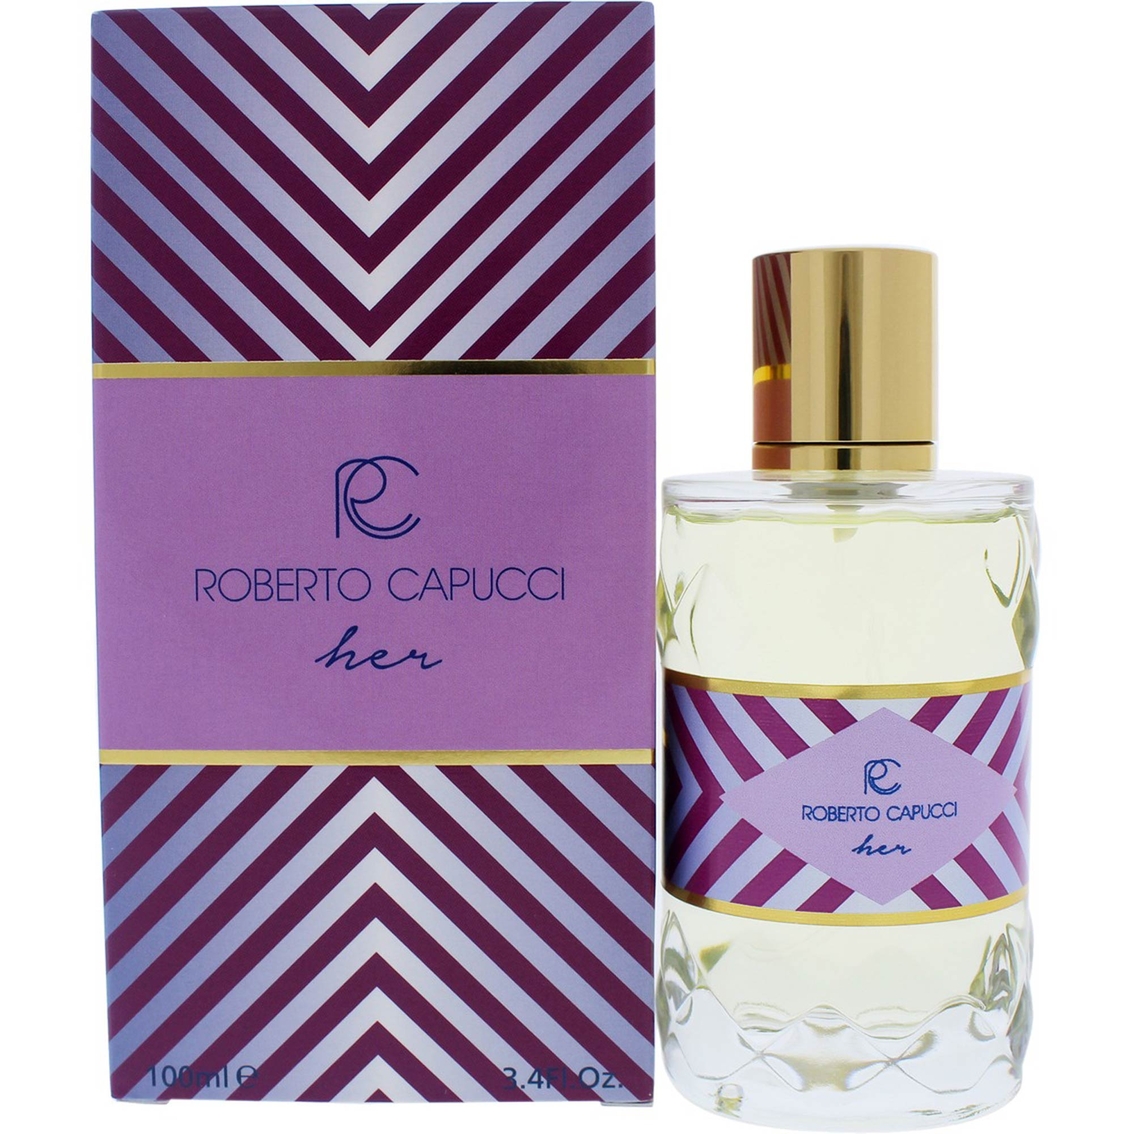 Roberto Capucci Her Eau de Parfum Spray - Image 2 of 2